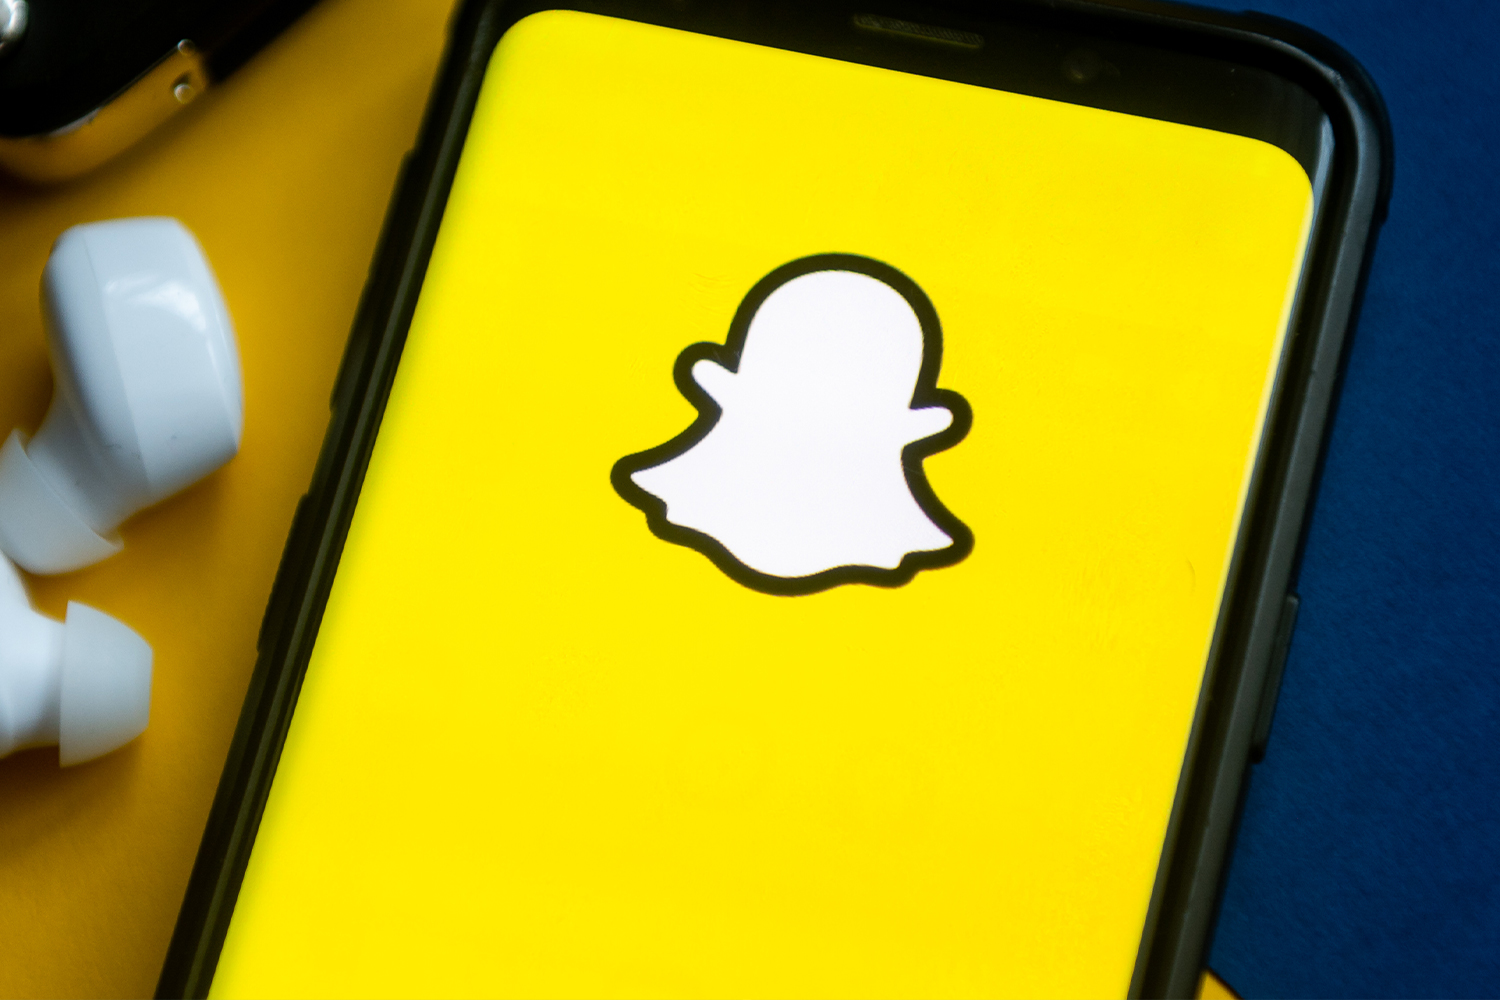 La opción para cambiar el nombre de usuario en su perfil de Snapchat no estaba disponible, disponible desde febrero de 2022.